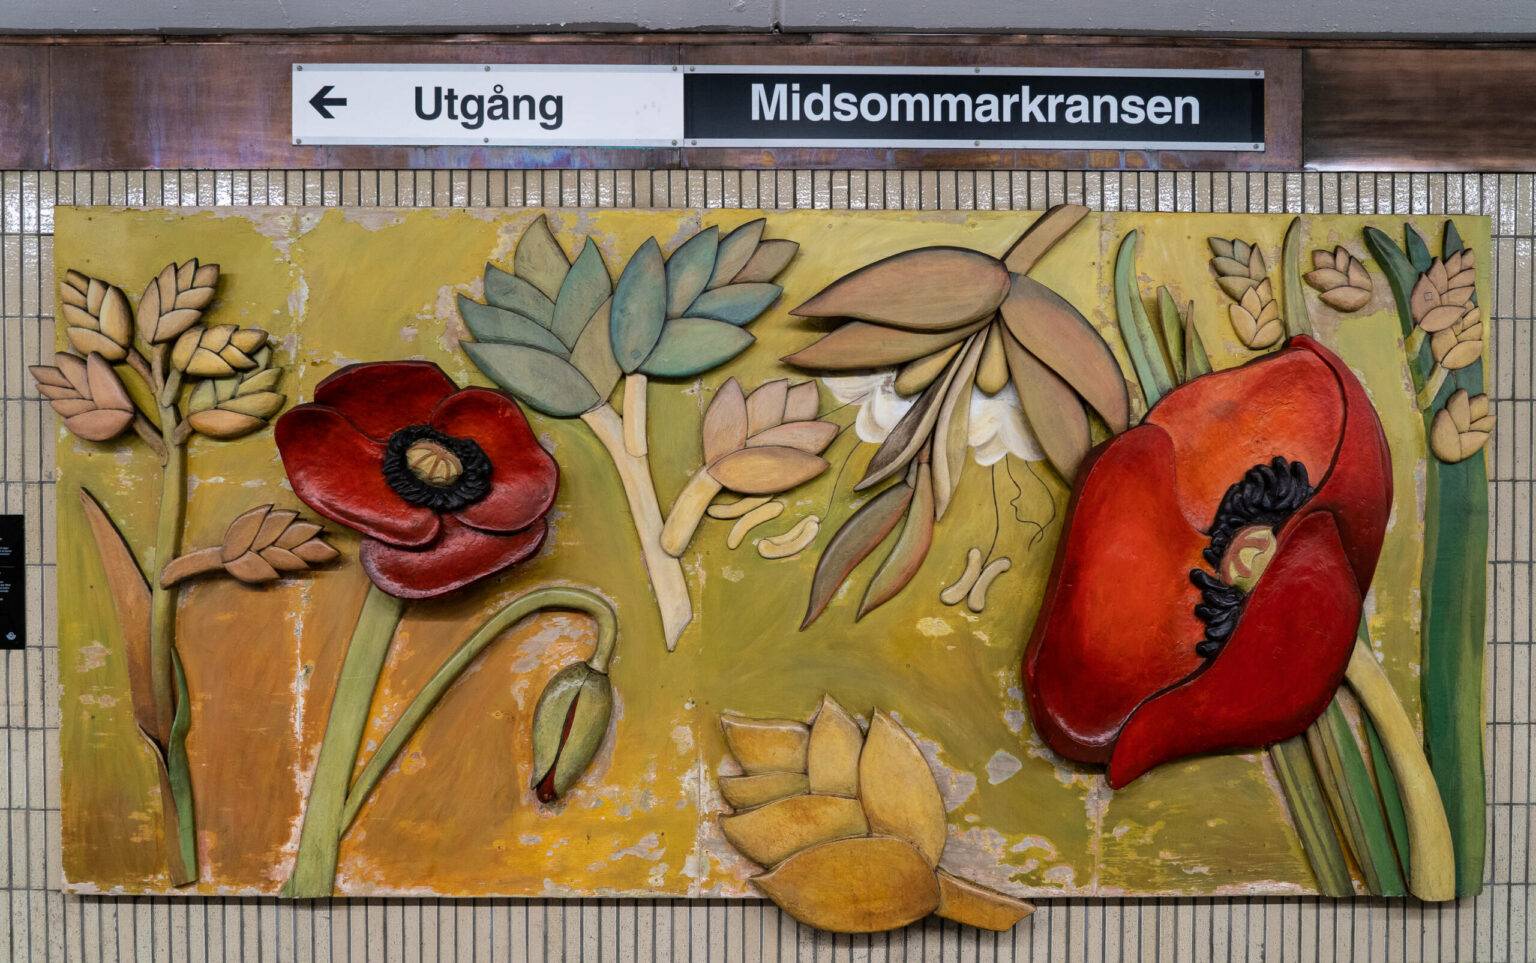 Kunst gibt es in Stockholm sogar in der U-Bahn, fast jede Station der Tunnelbana wurde mit Kunstwerken verschönert.